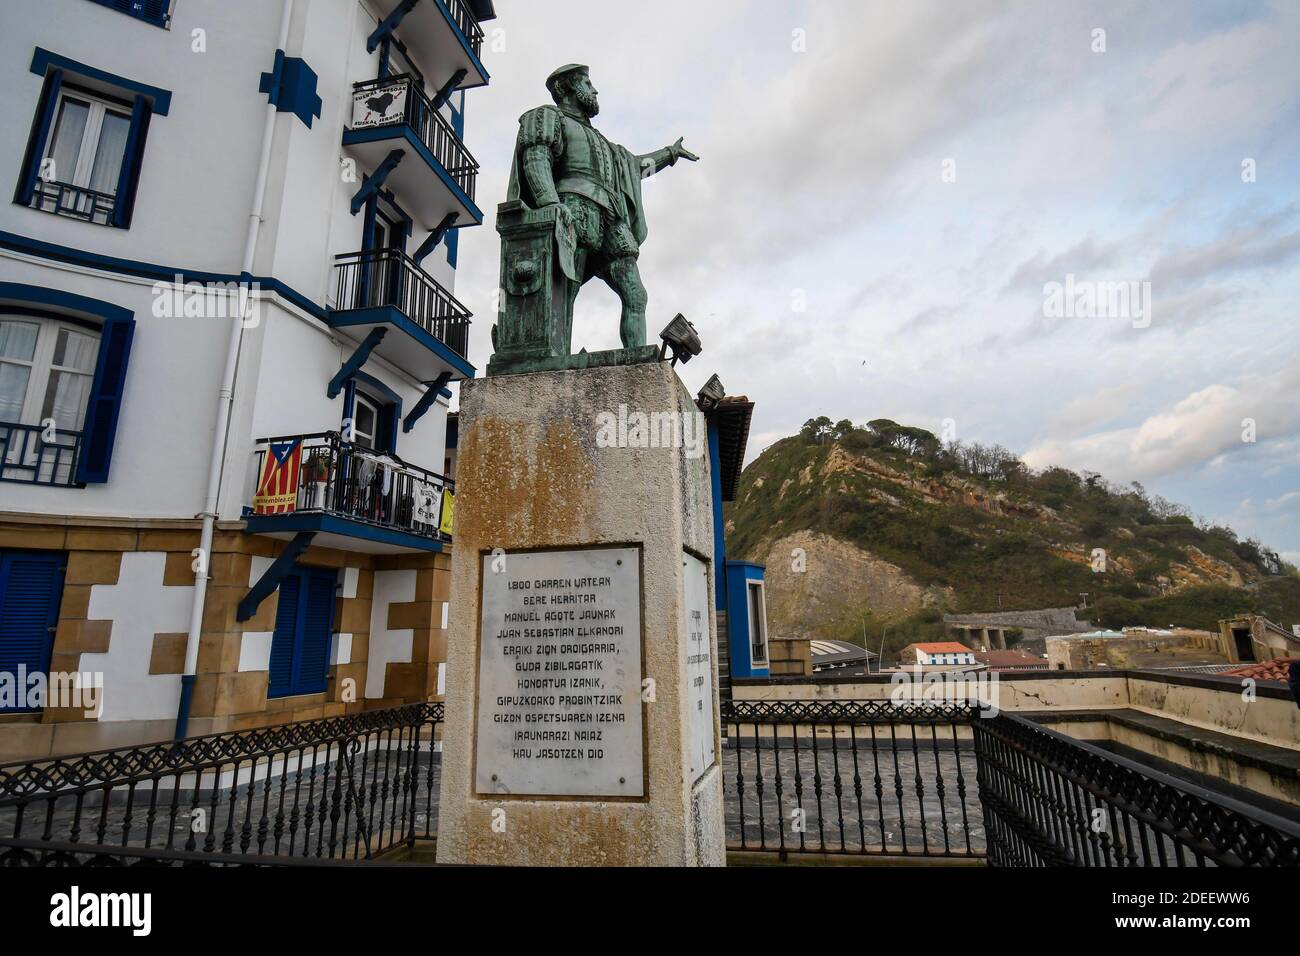 Statue of Juan Sebastian Elcano in Getaria Stock Photo